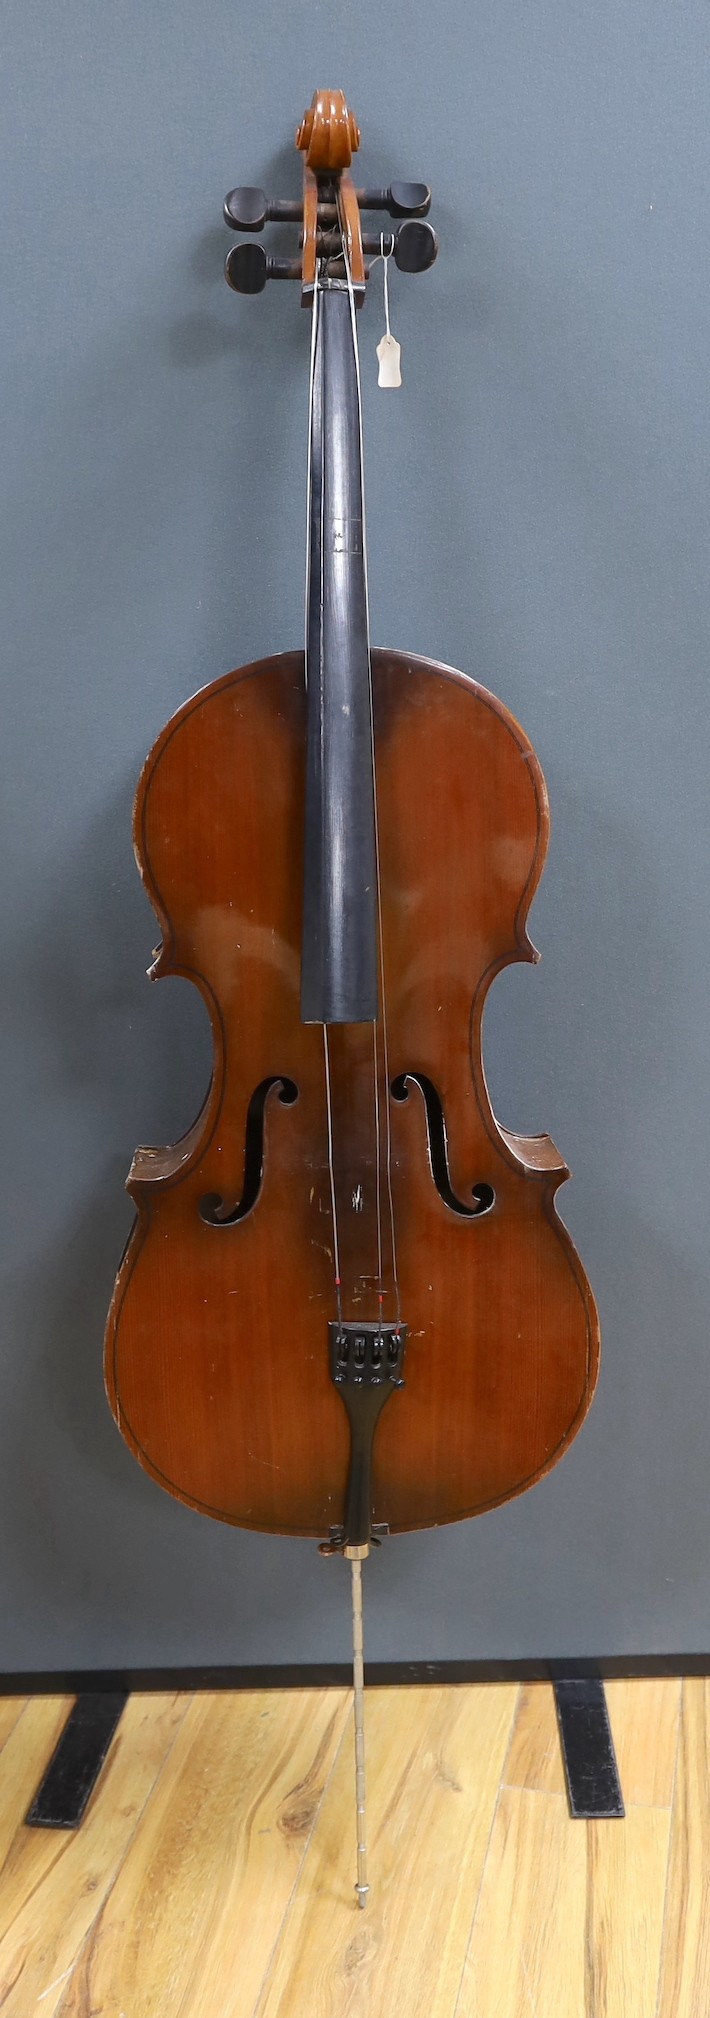 A modern cello, with canvas case